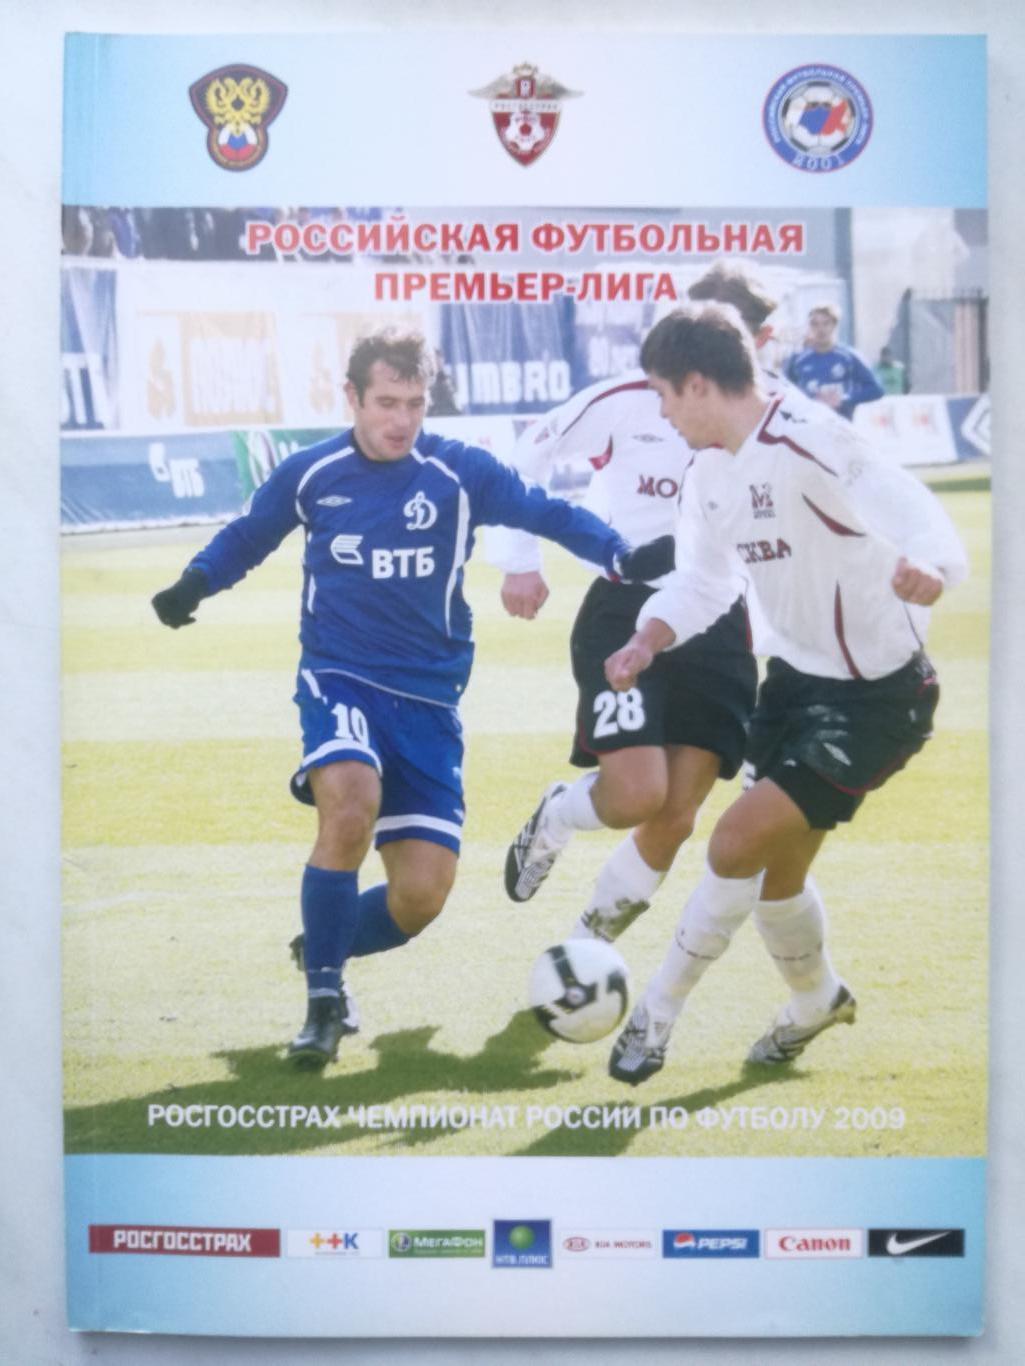 Москва 2009, Российская футбольная премьер-лига (РФПЛ)